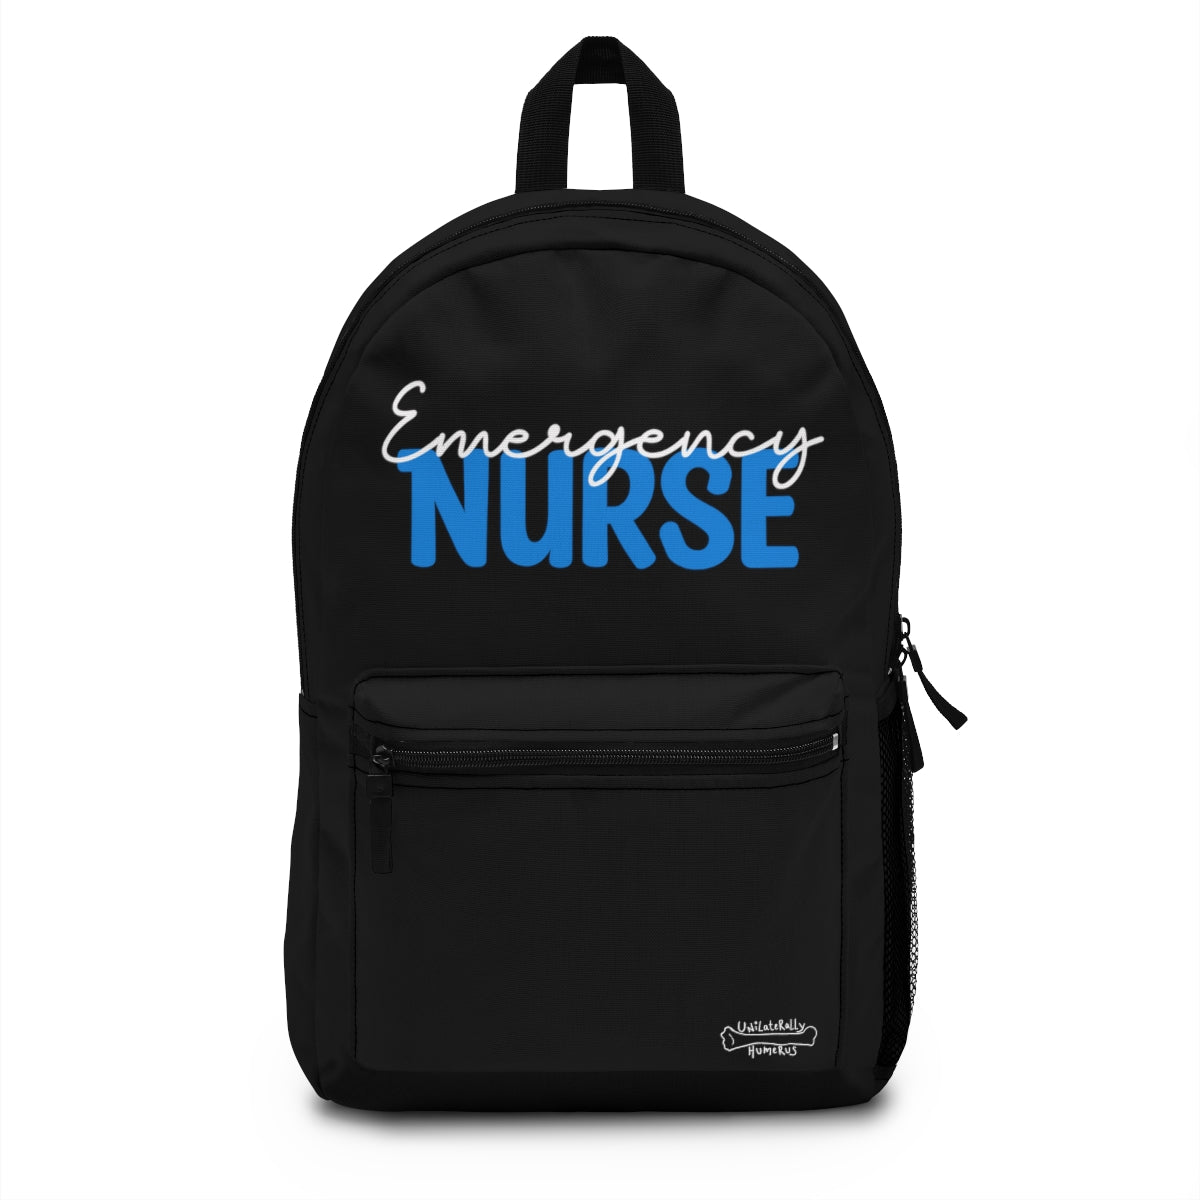 Emergency Nurse Backpack